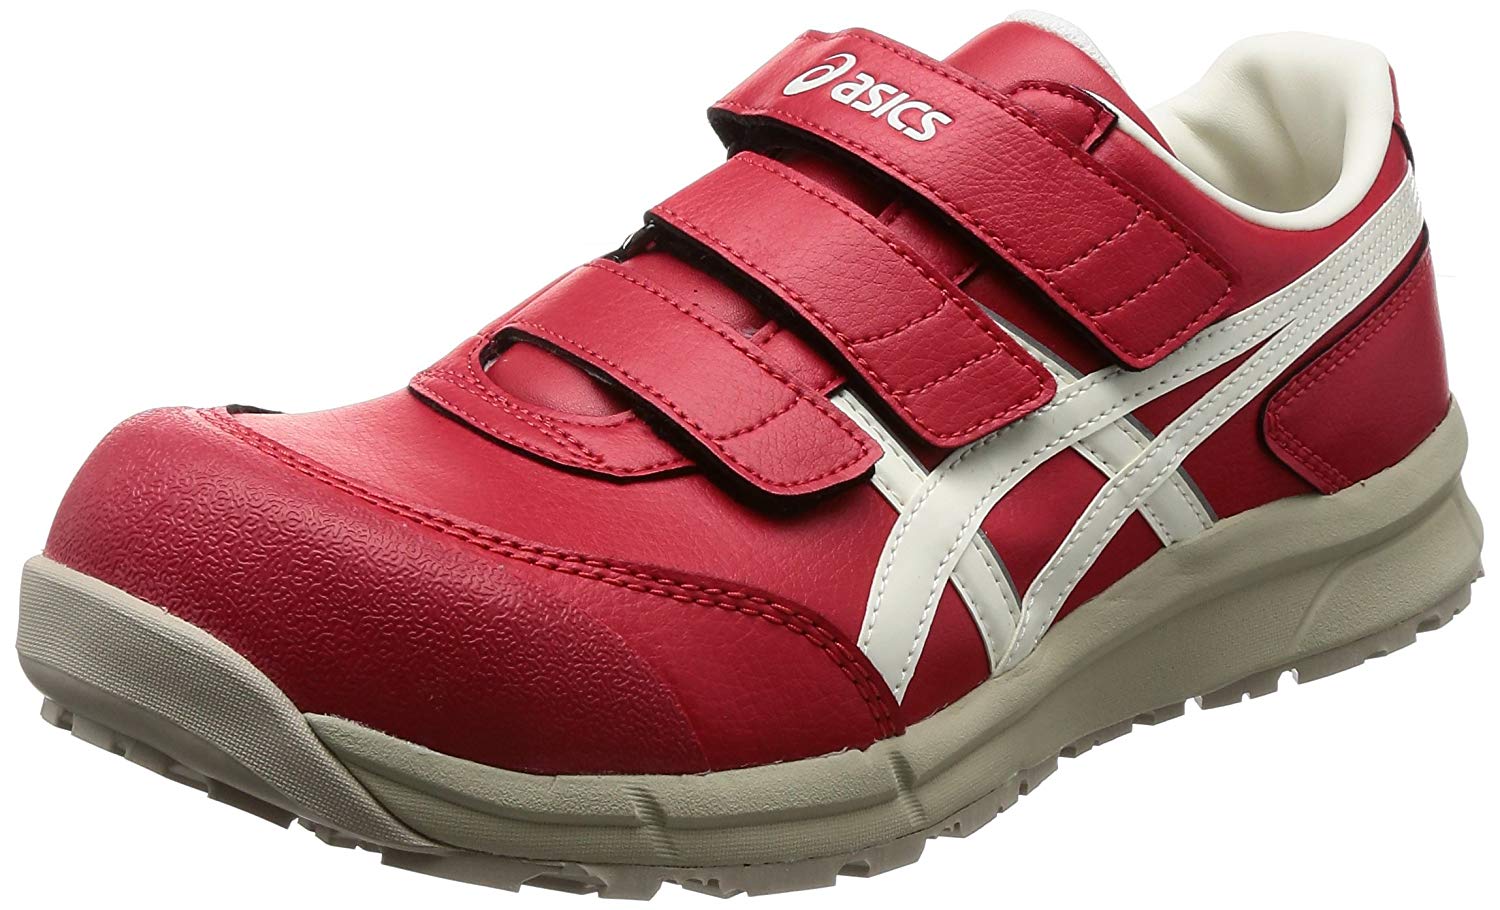 最近の安全靴の流行りはアシックス おしゃれ安全靴が壊れた Ag Lifeblog 明日はどこ歩こう